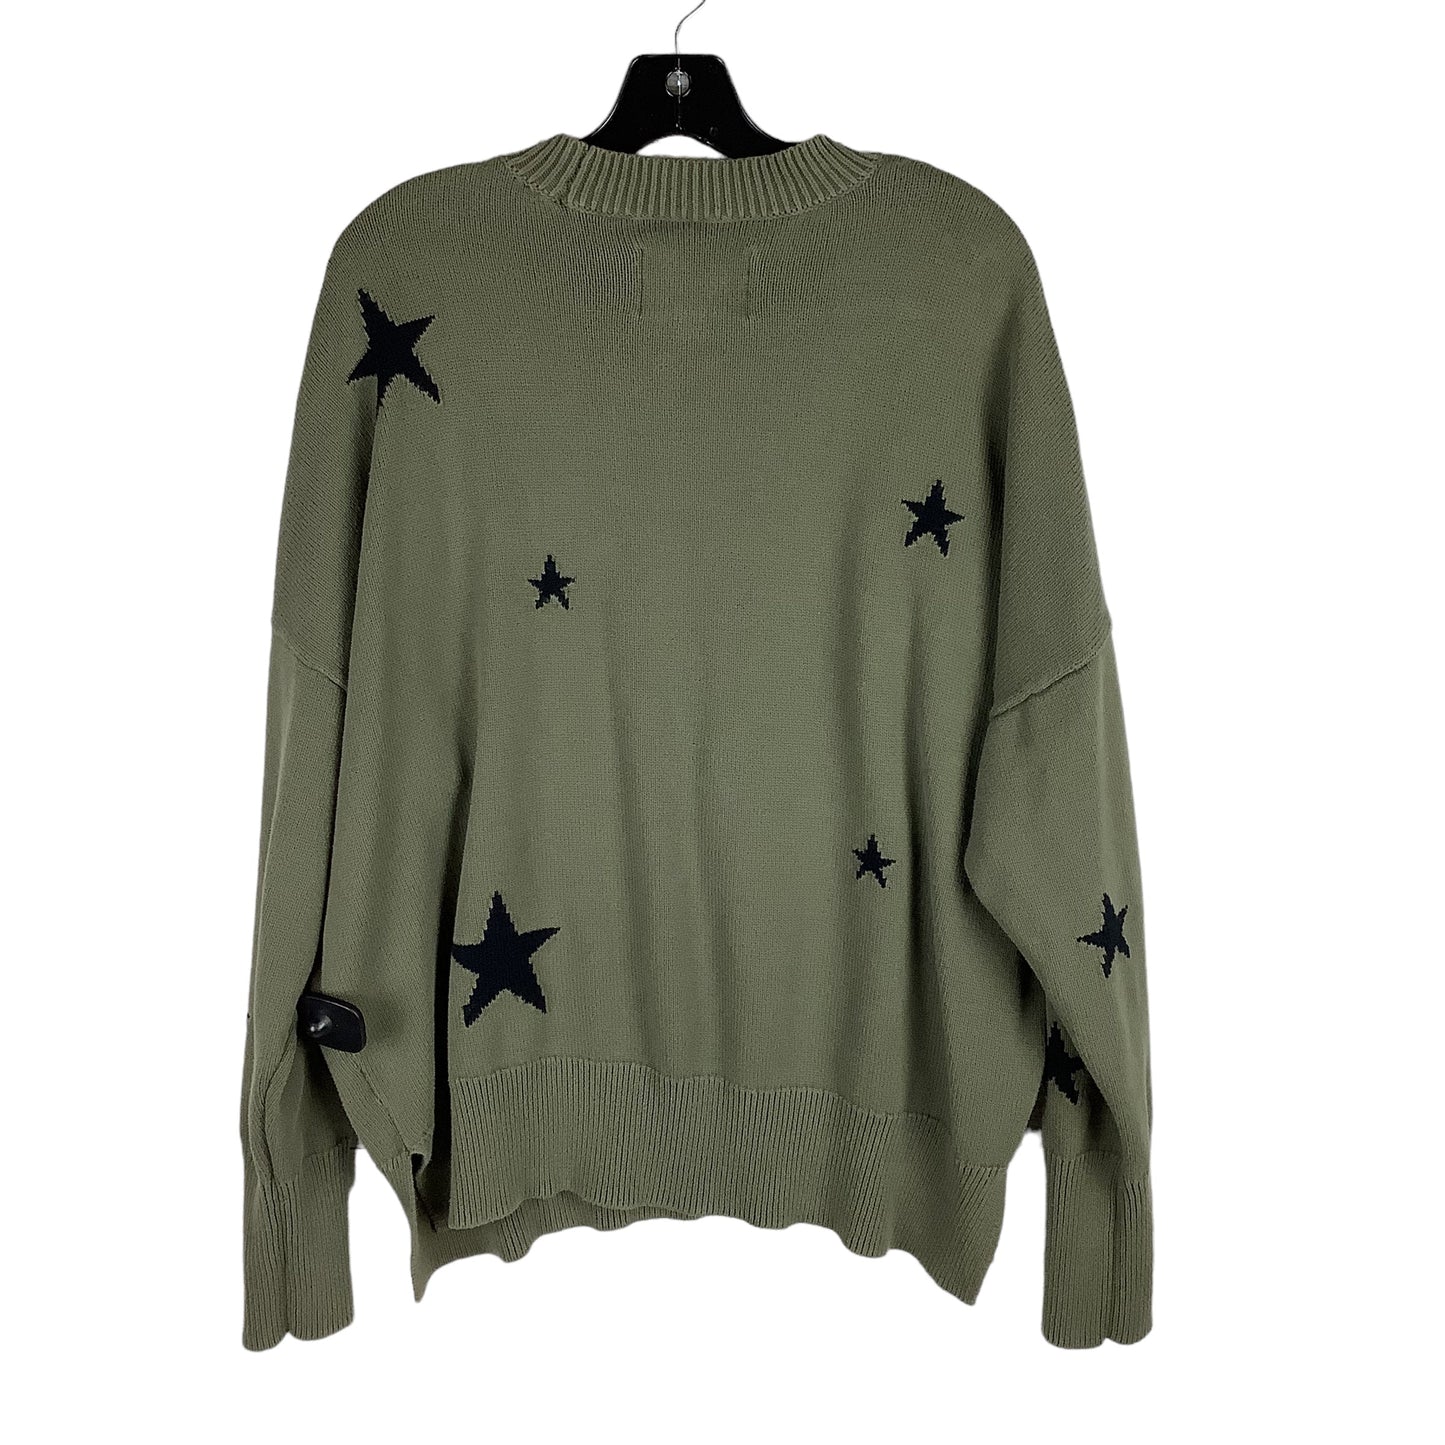 Sweater Designer By Pistola  Size: Xl